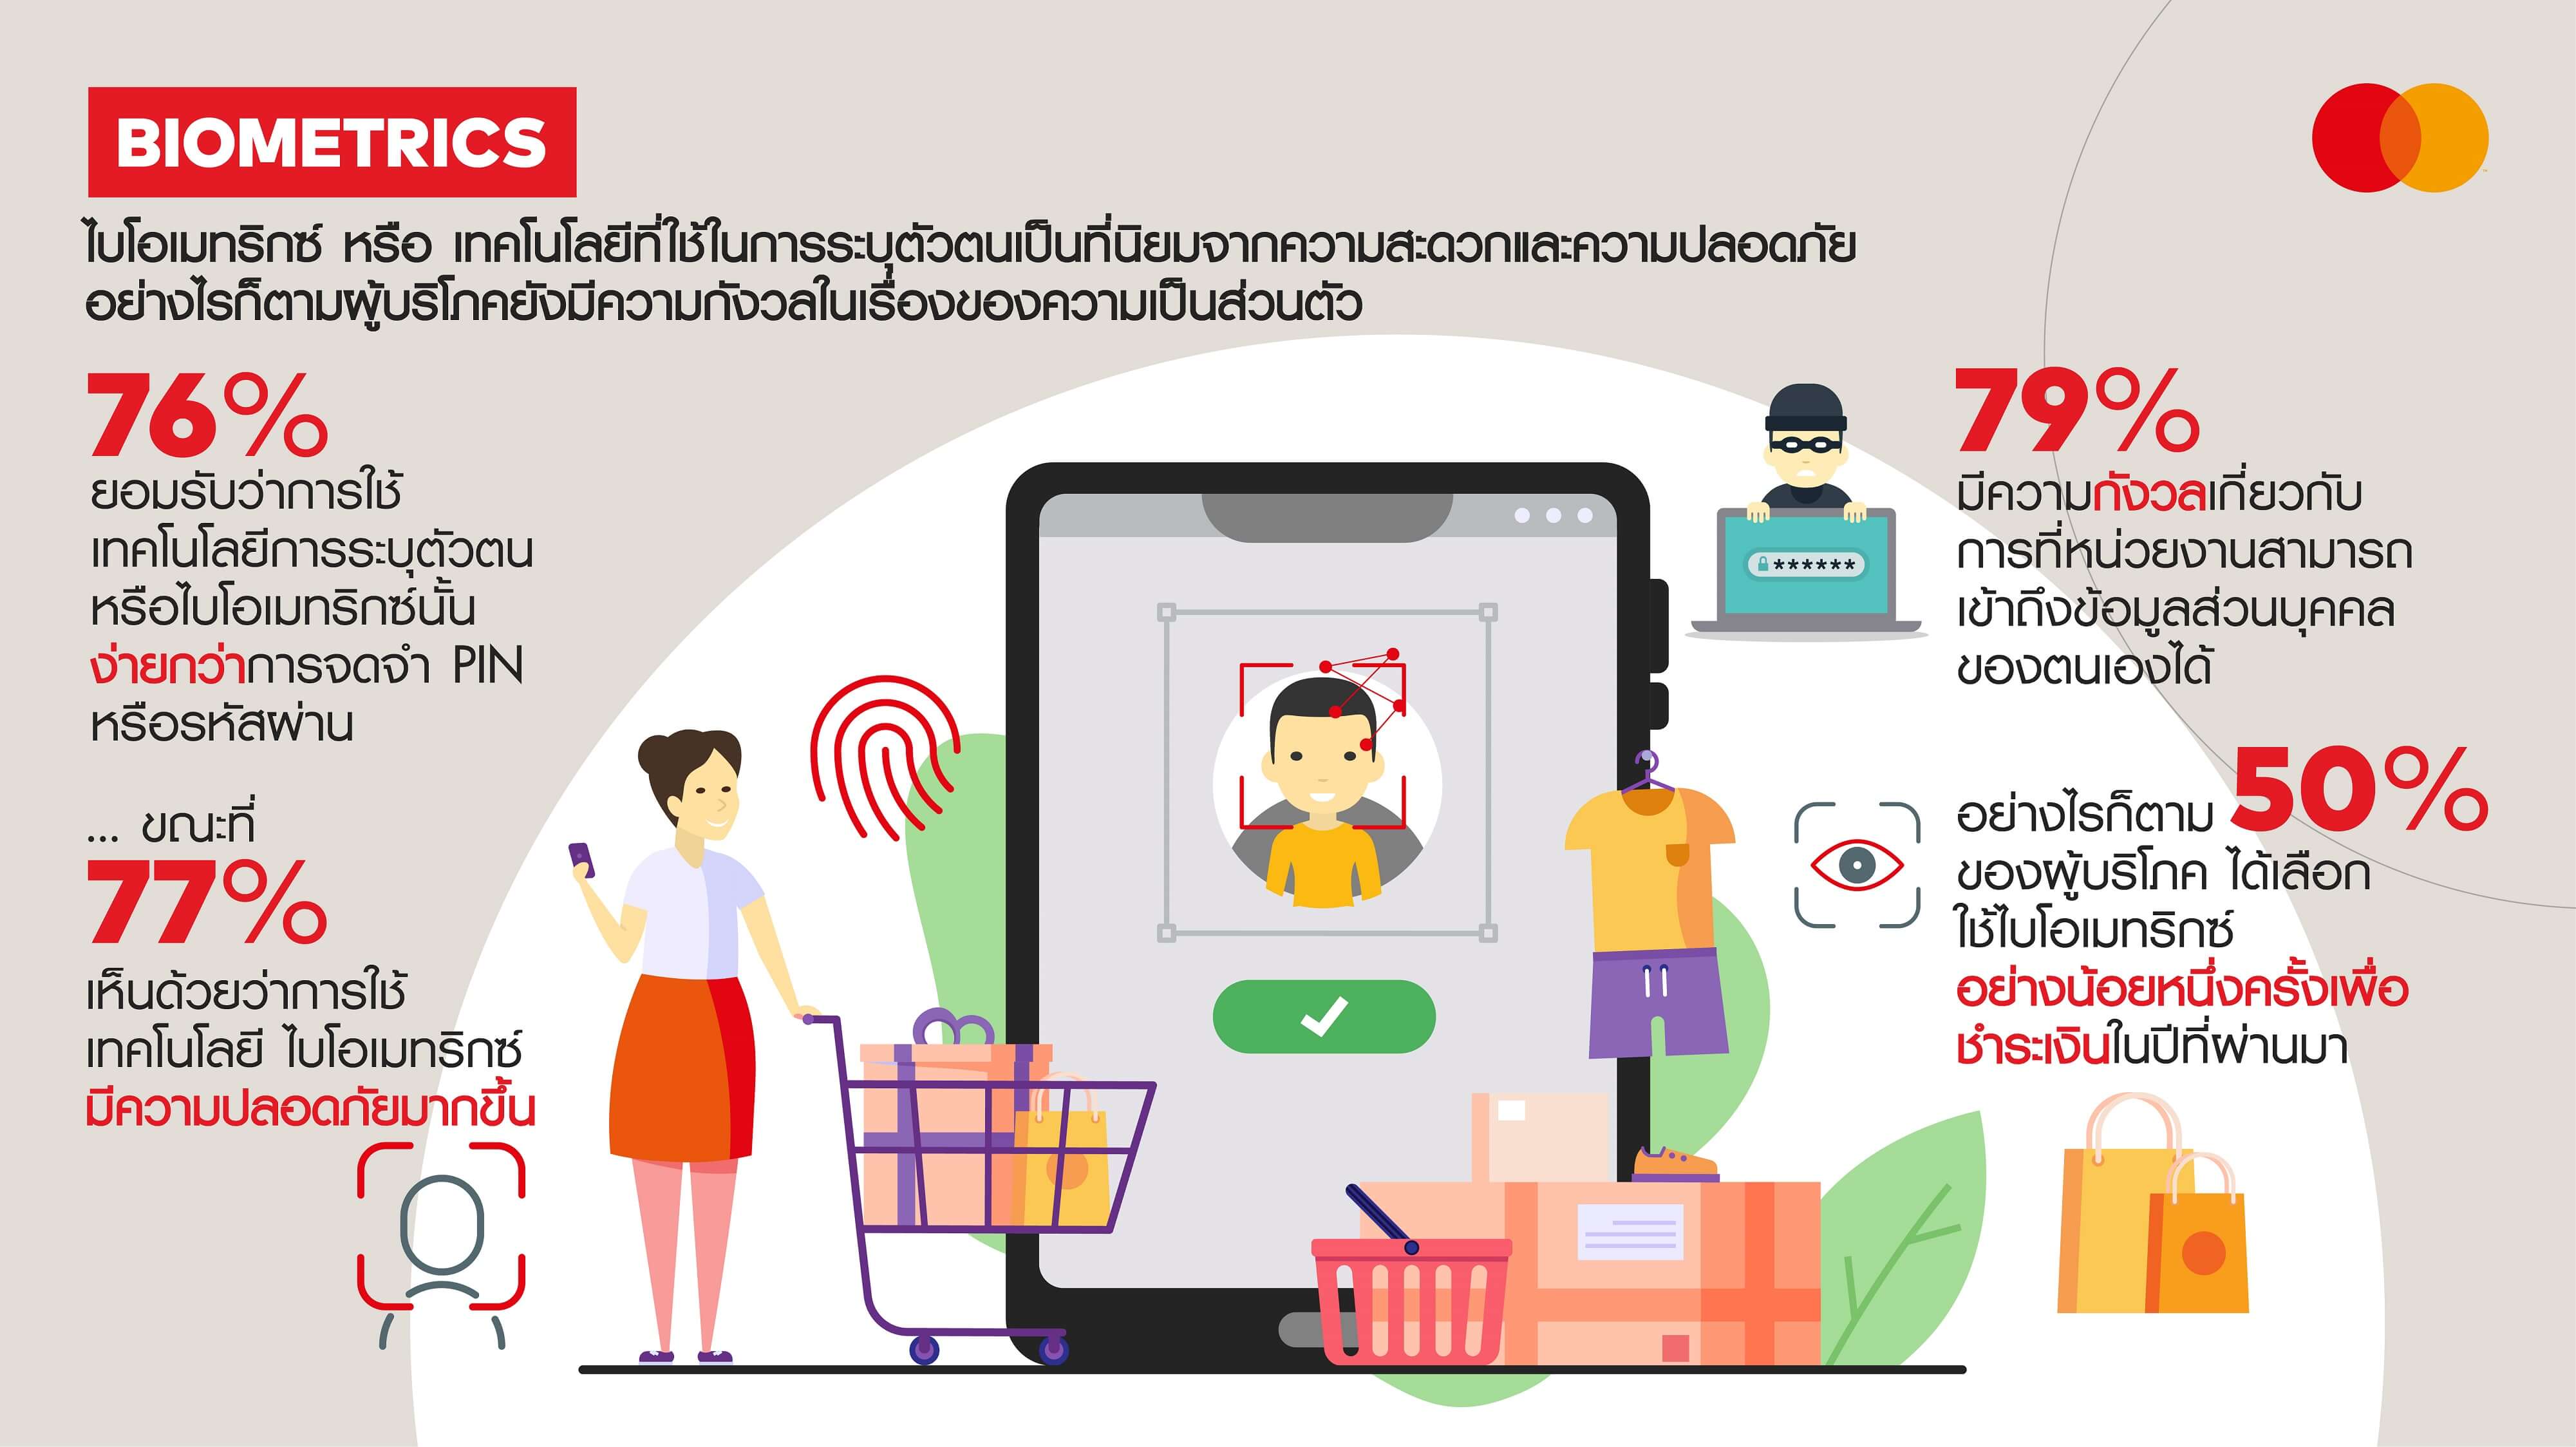 งานวิจัยมาสเตอร์การ์ด เผยผู้บริโภคชาวไทย 3 ใน 4 เชื่อว่าการยืนยันตัวบุคคลด้วยระบบไบโอเมทริกซ์ปลอดภัยกว่าการกรอกรหัส (PIN)